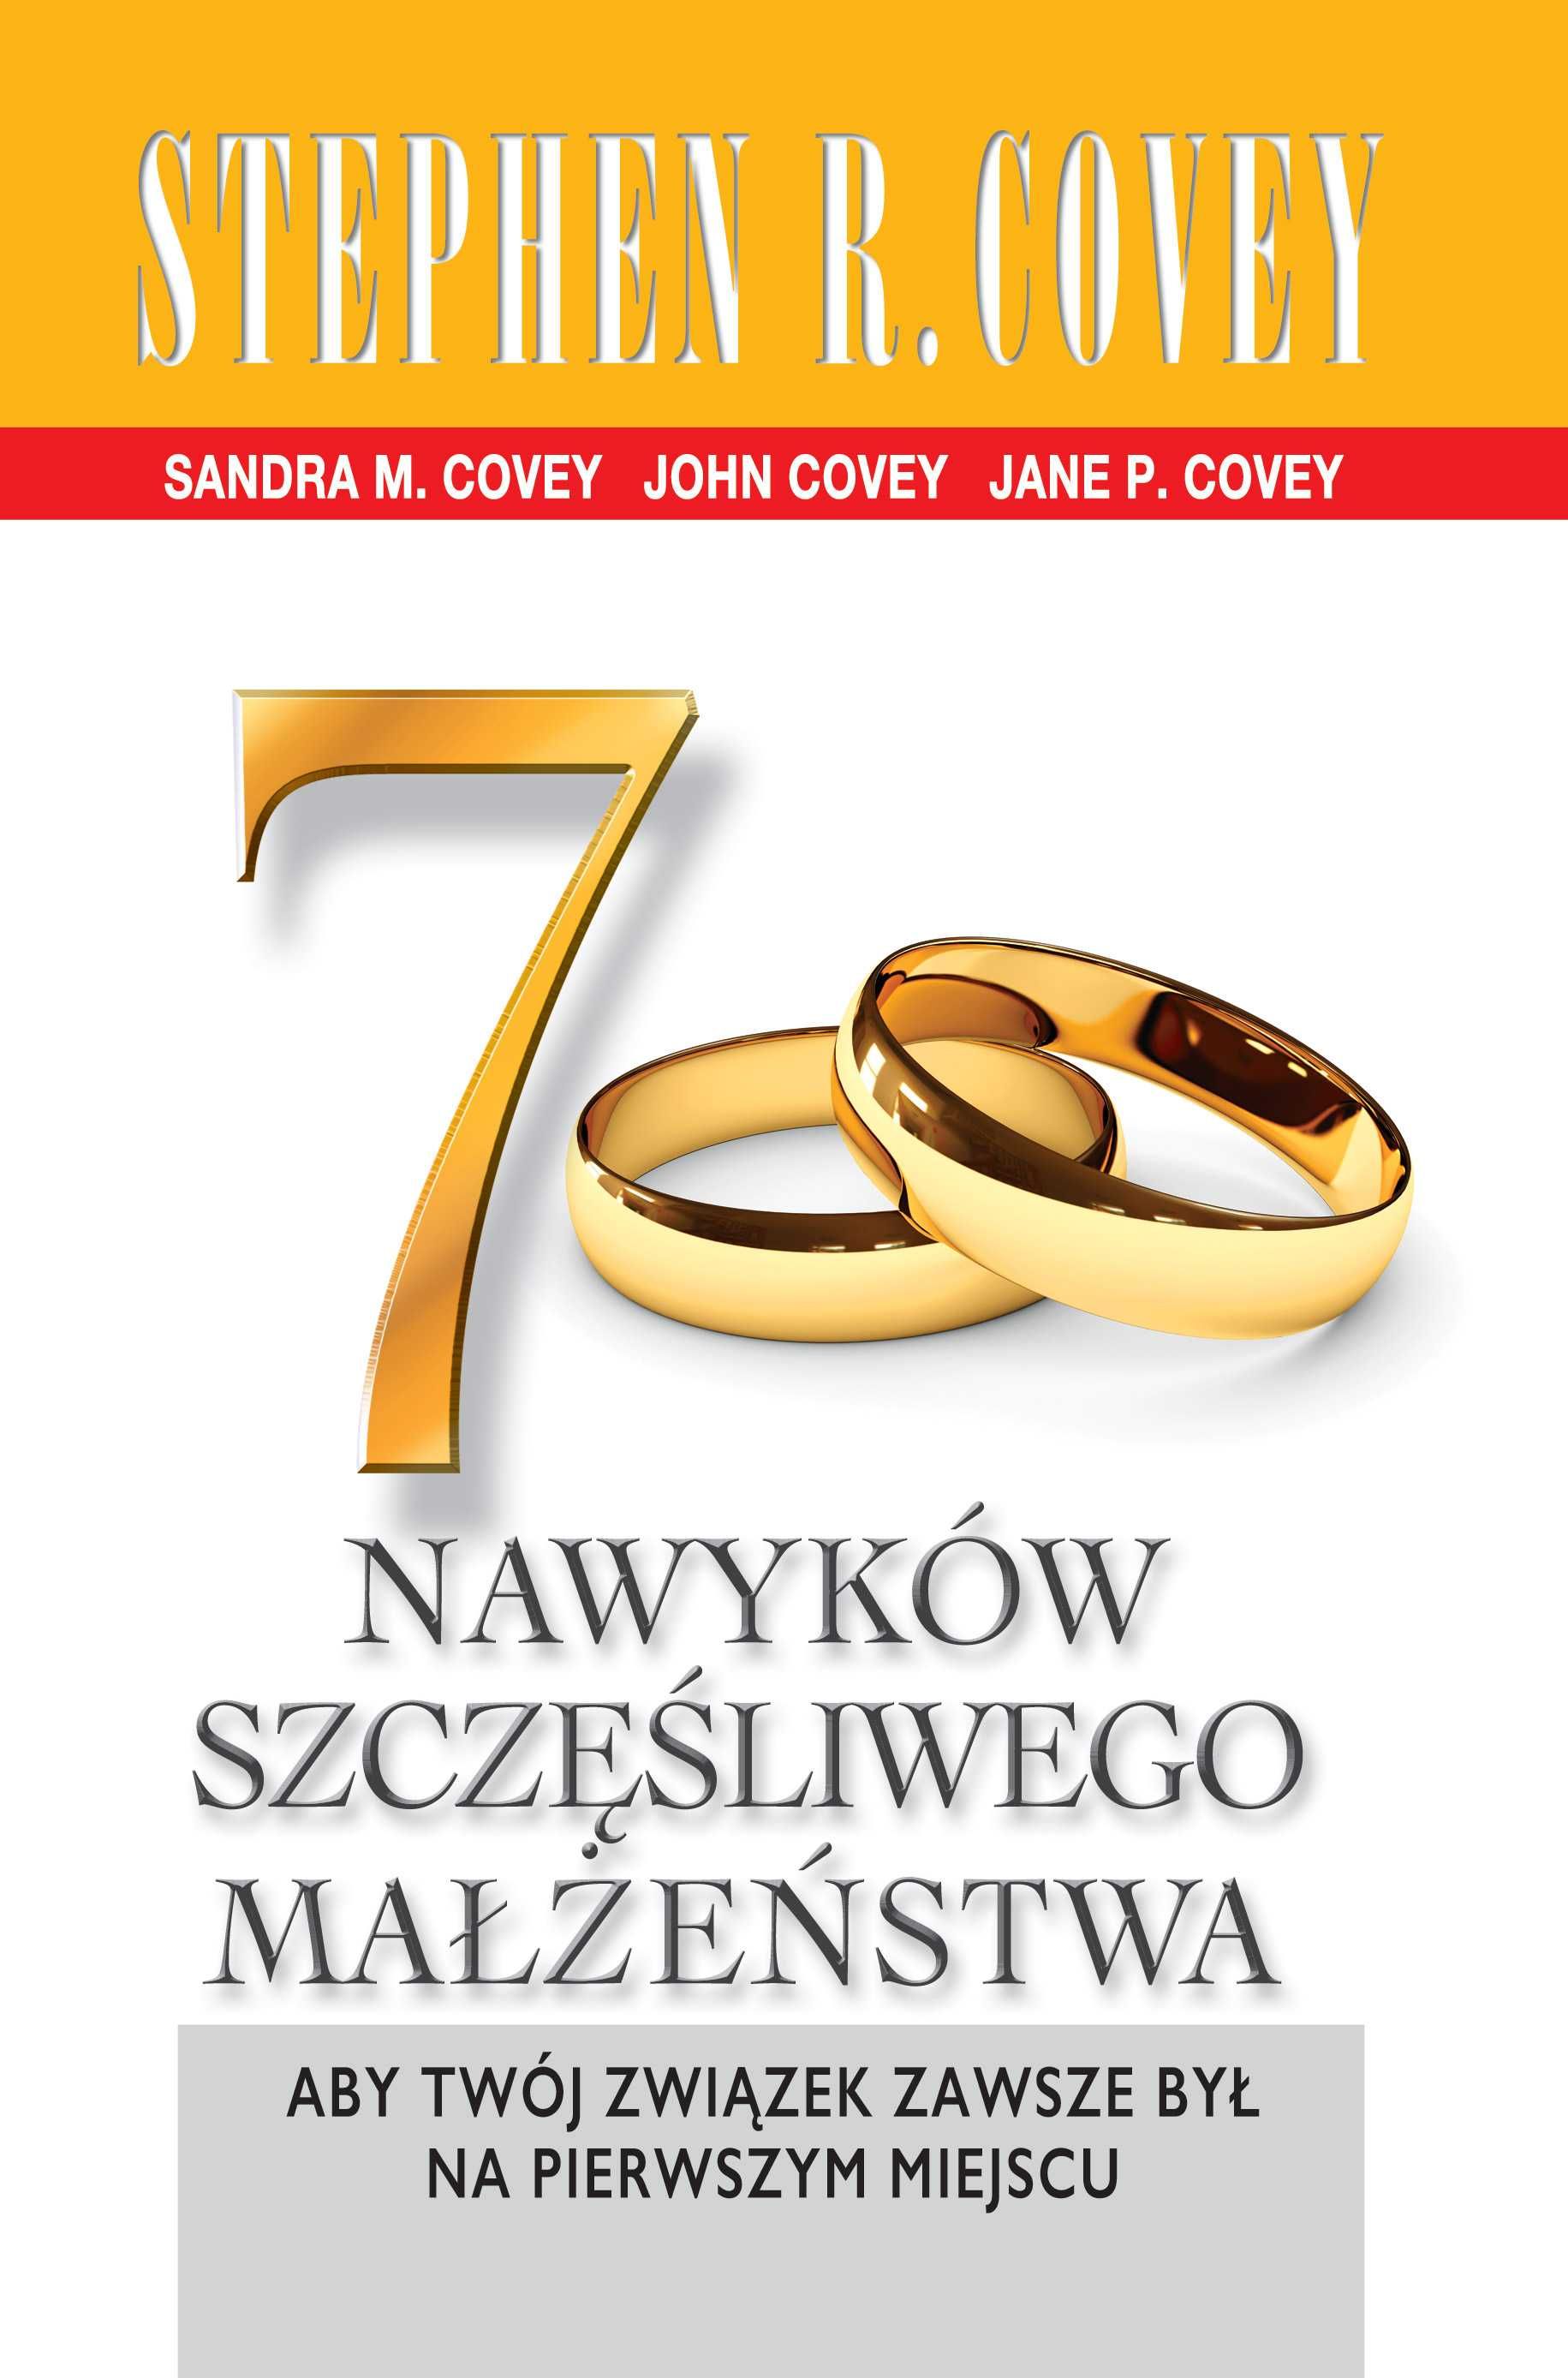 7 nawyków szczęśliwego małżeństwa
Autor: Stephen R. Covey